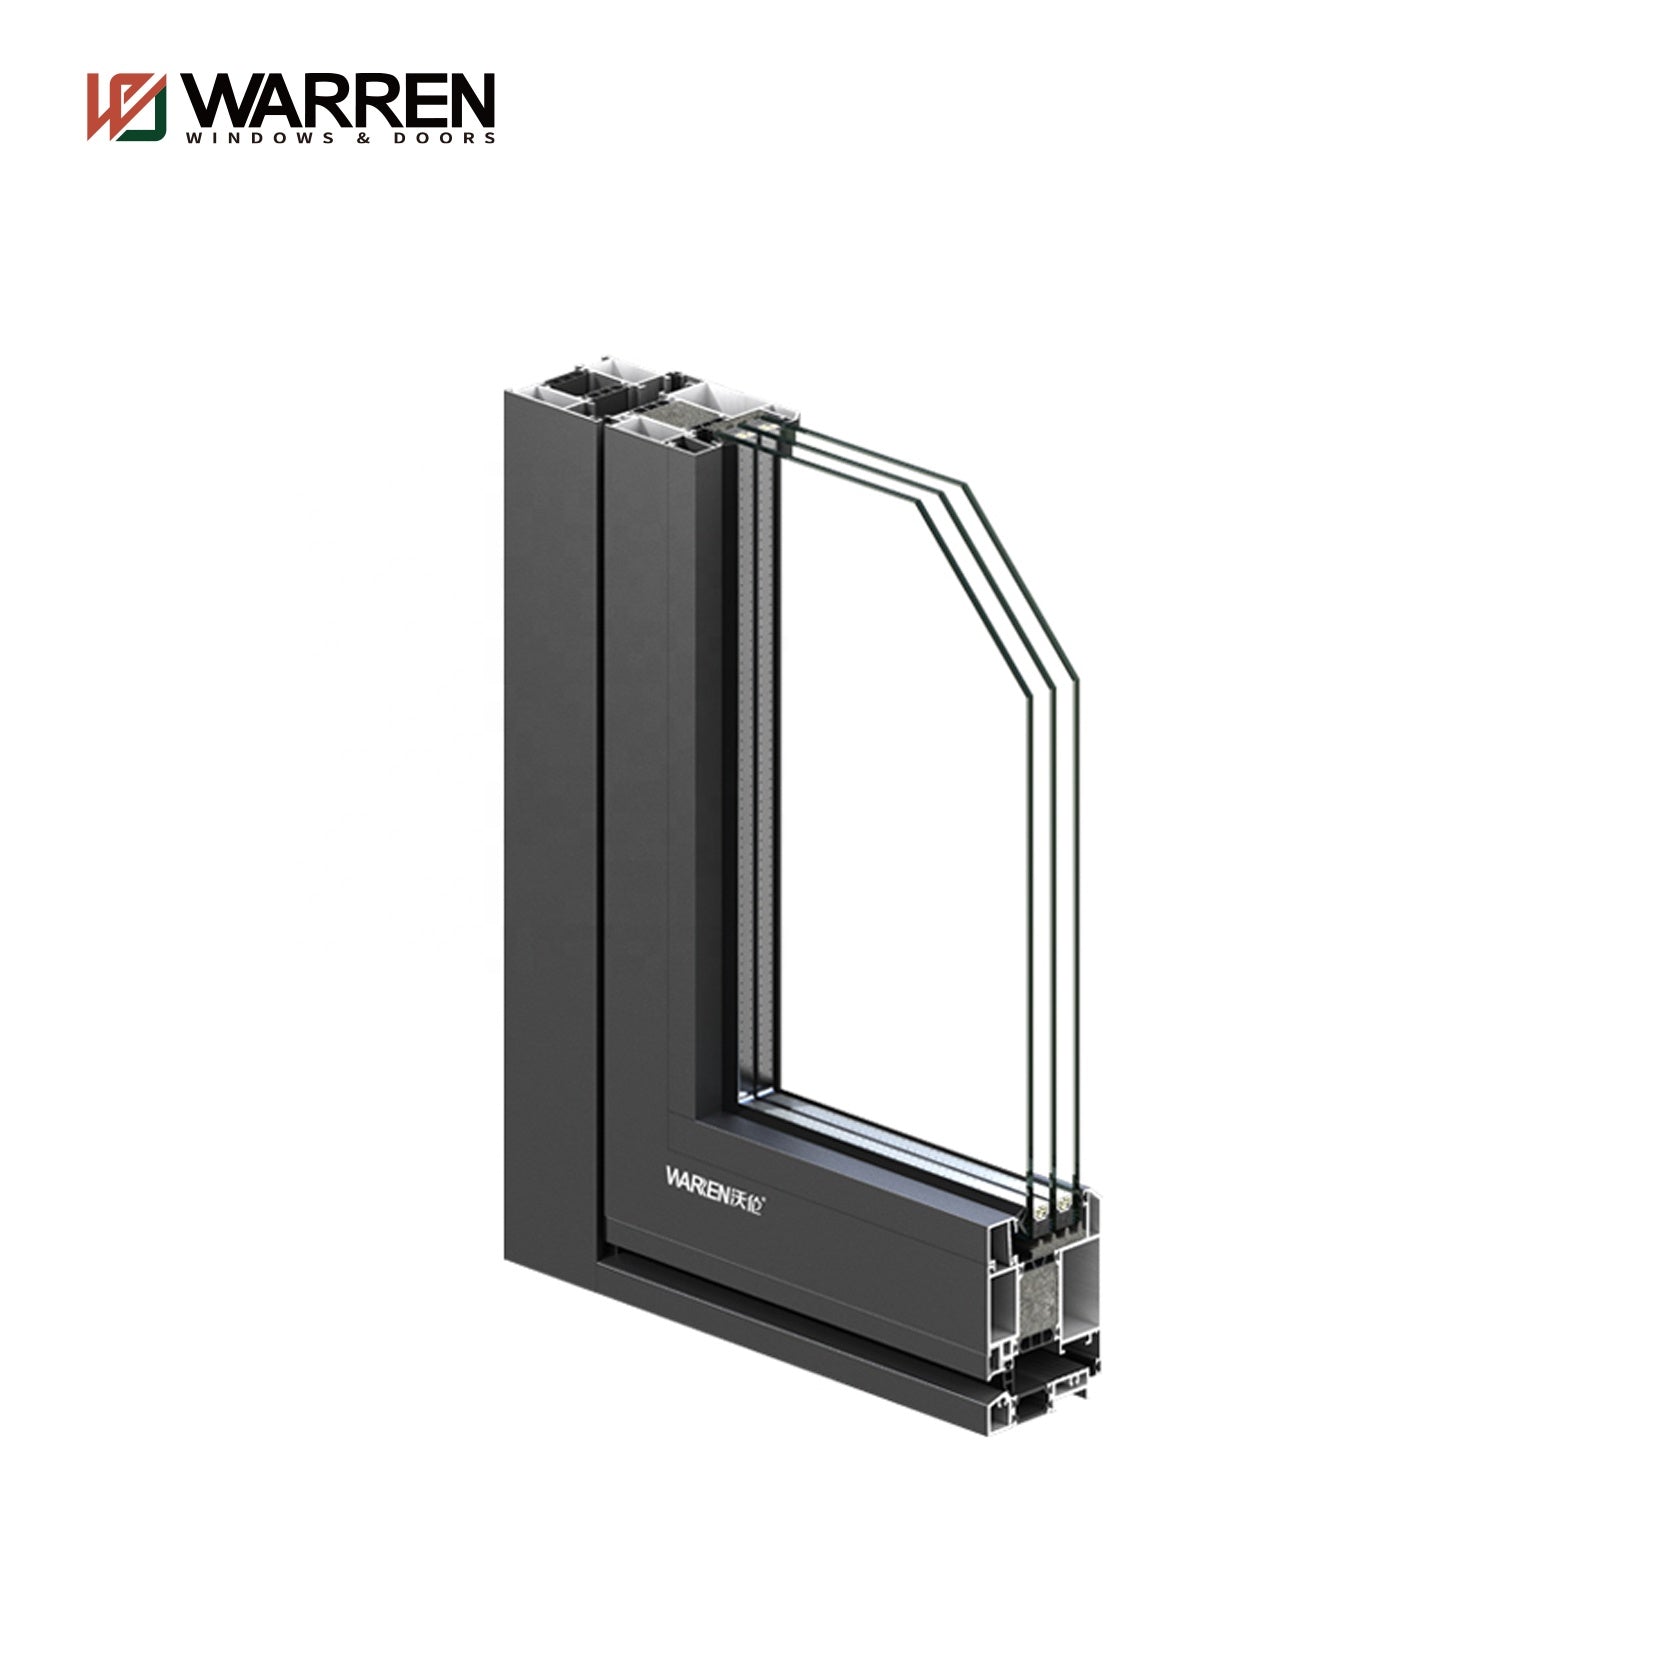 Warren 9 x 8 ft casement door triple glass double door German hardware